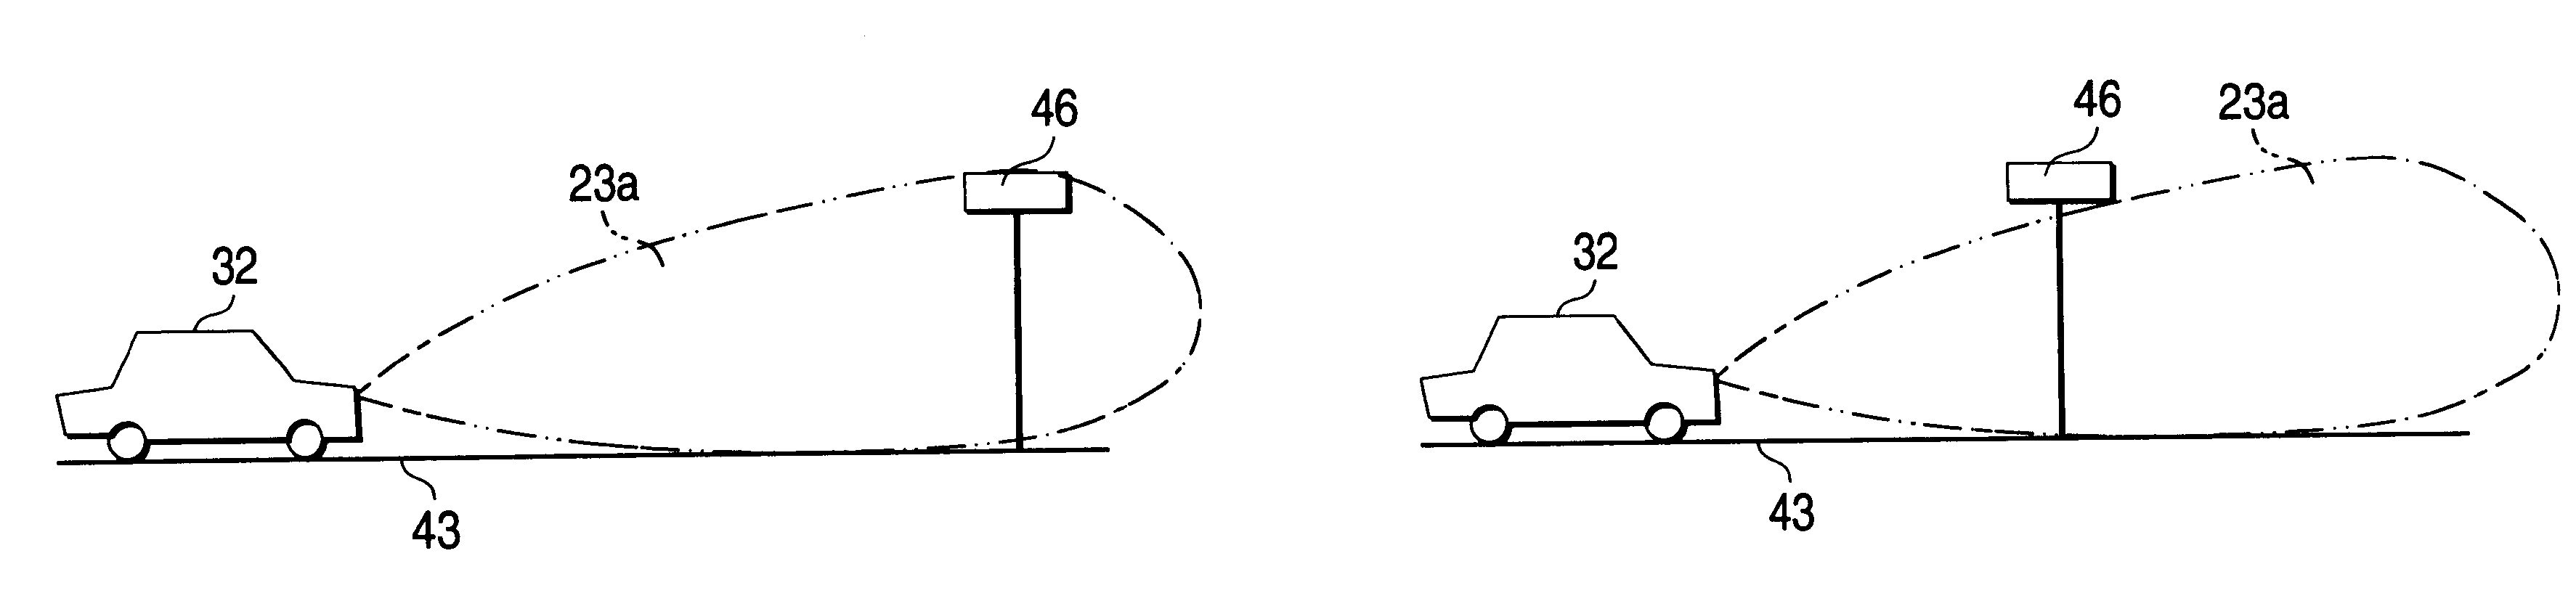 Motor-vehicle-mounted radar apparatus